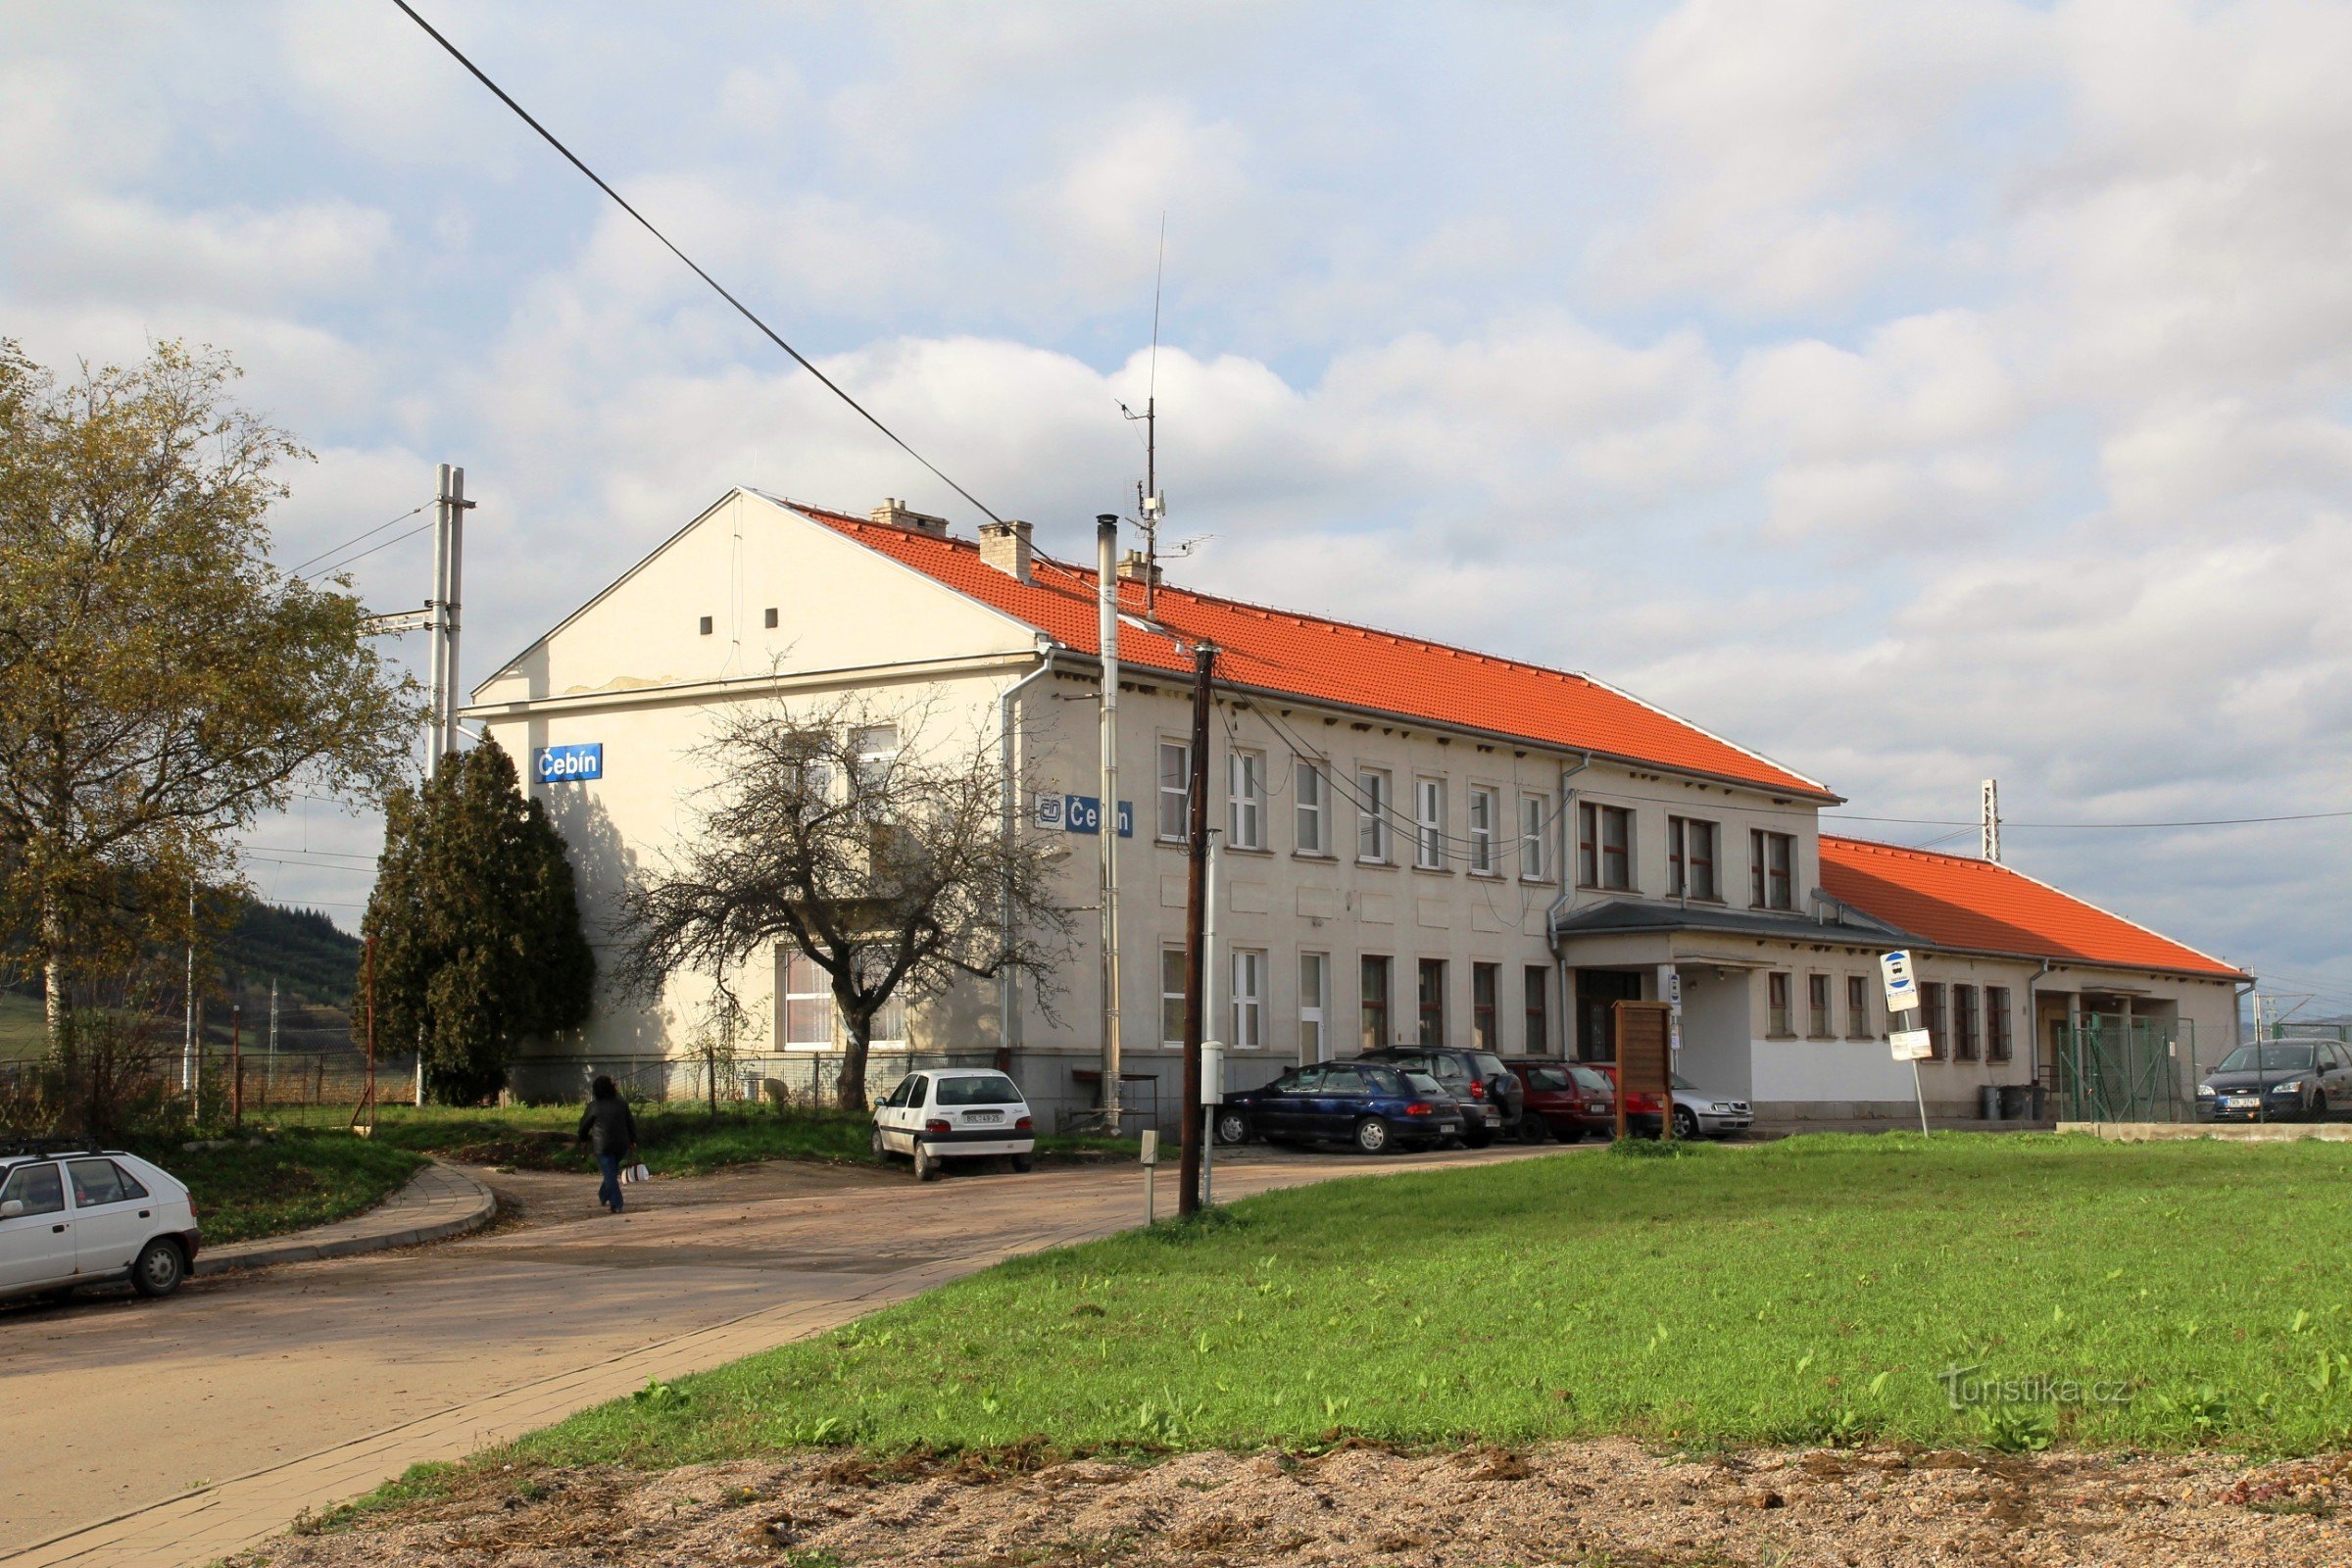 Station building in Čebín